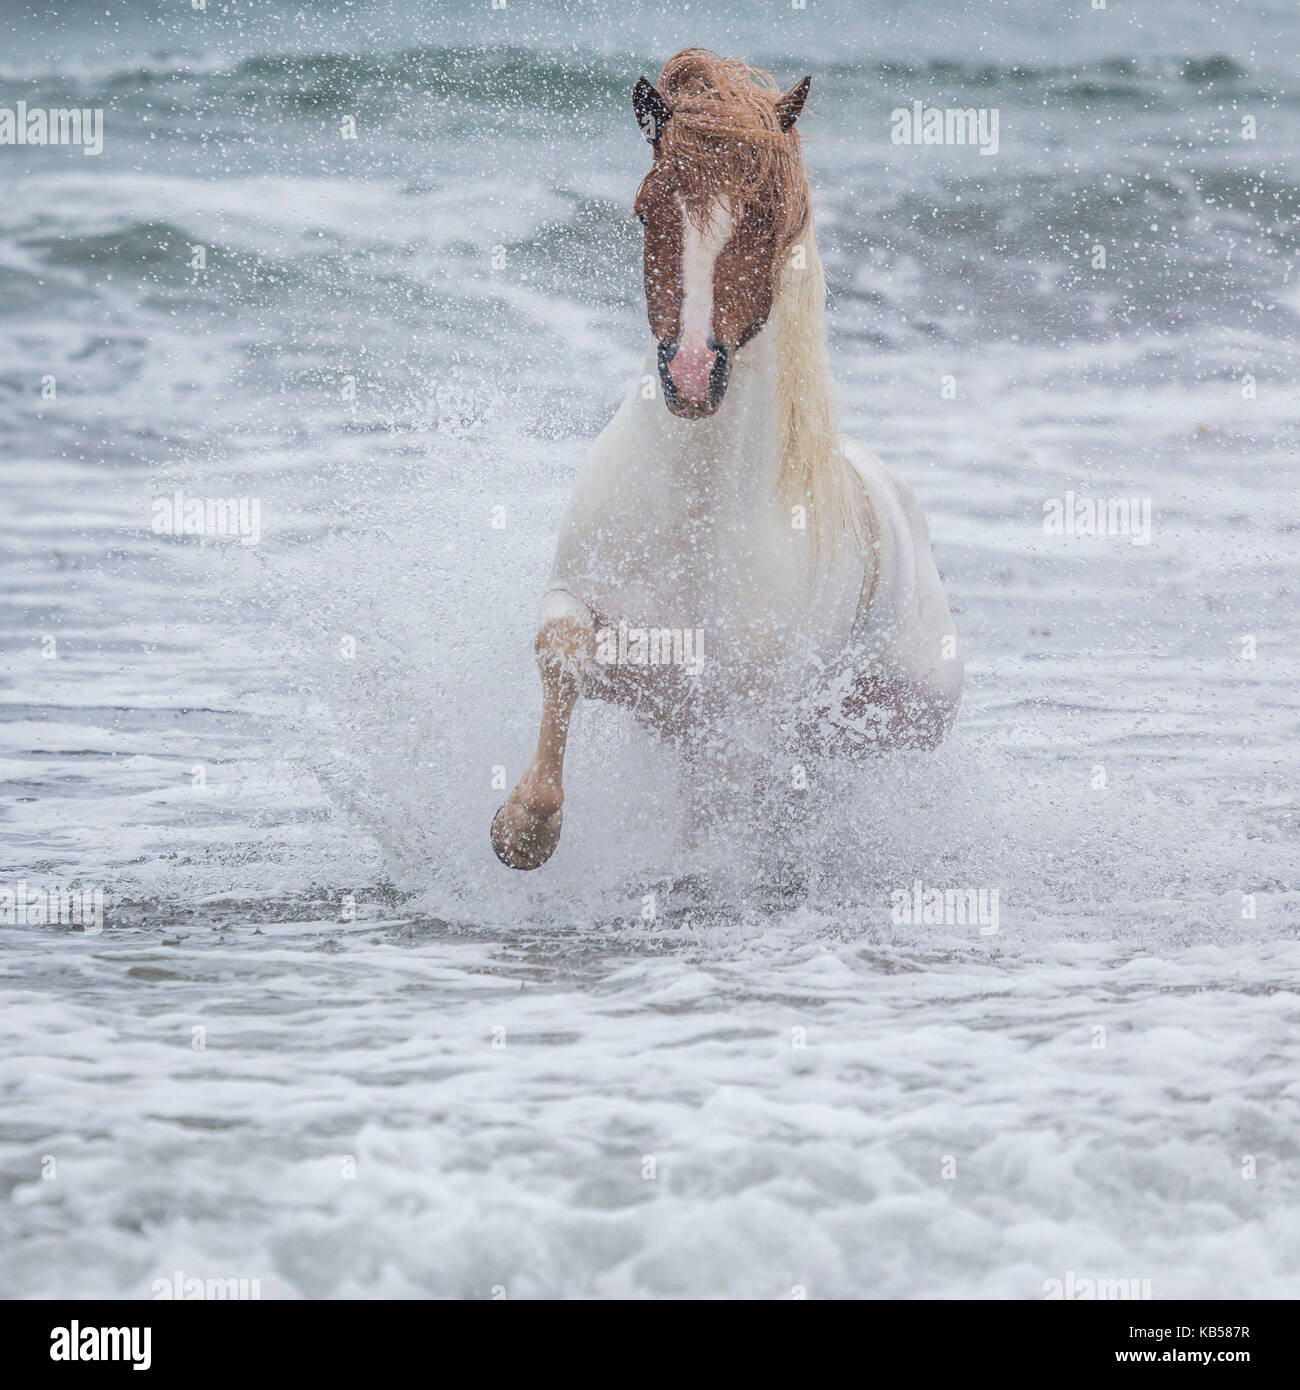 Cavallo islandese immagini e fotografie stock ad alta risoluzione - Alamy